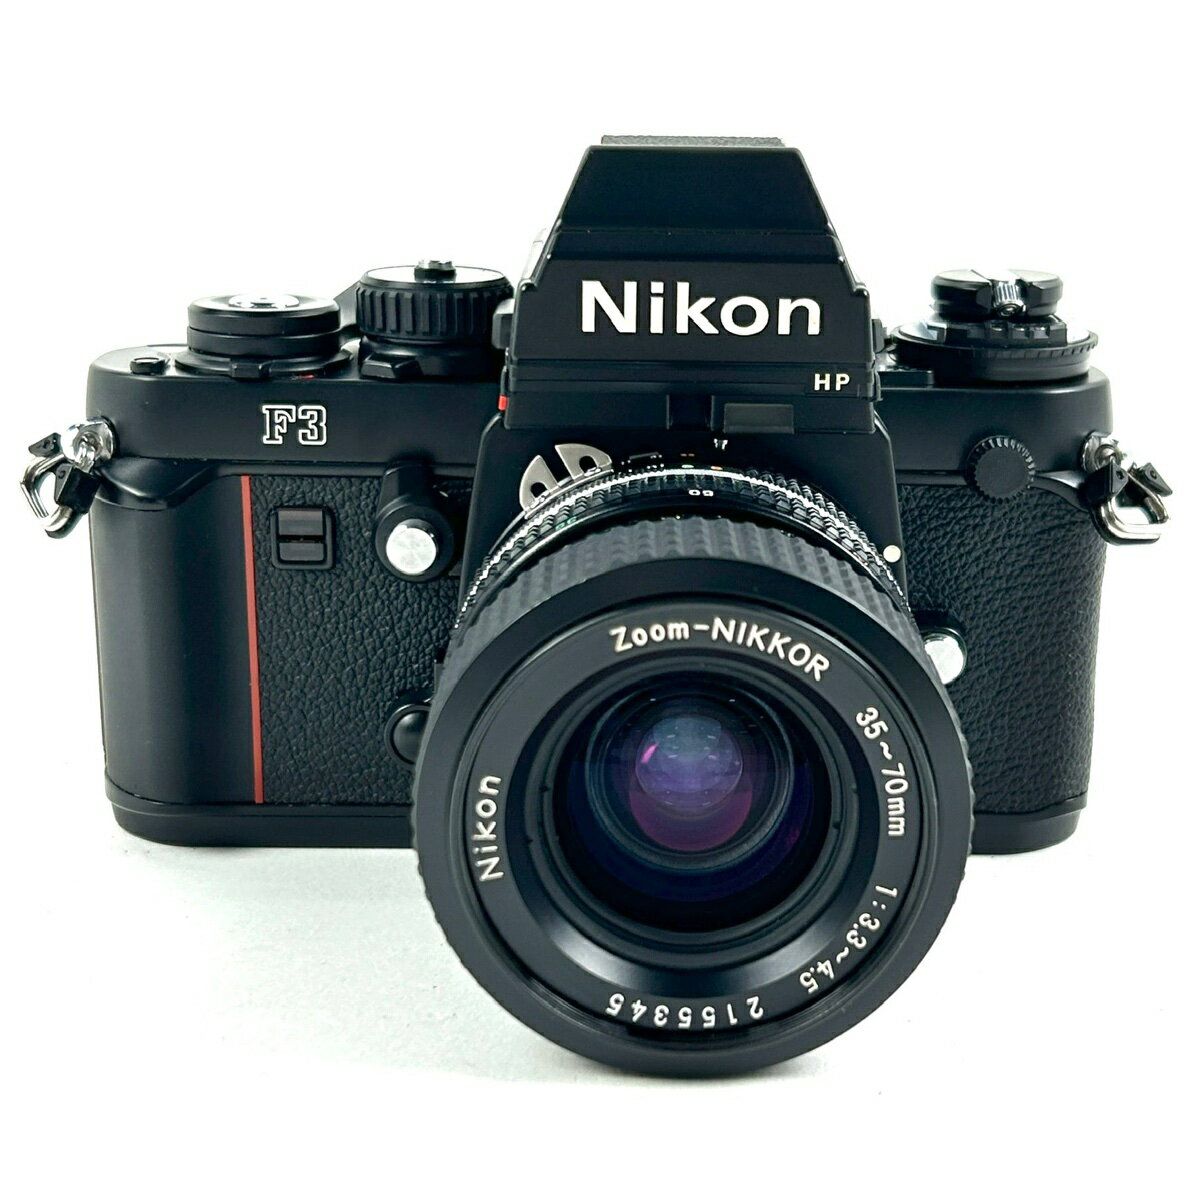 ニコン Nikon F3 HP Ai-S Zoom-NIKKOR 35-70mm F3.3-4.5 フィルム マニュアルフォーカス 一眼レフカメラ 【中古】